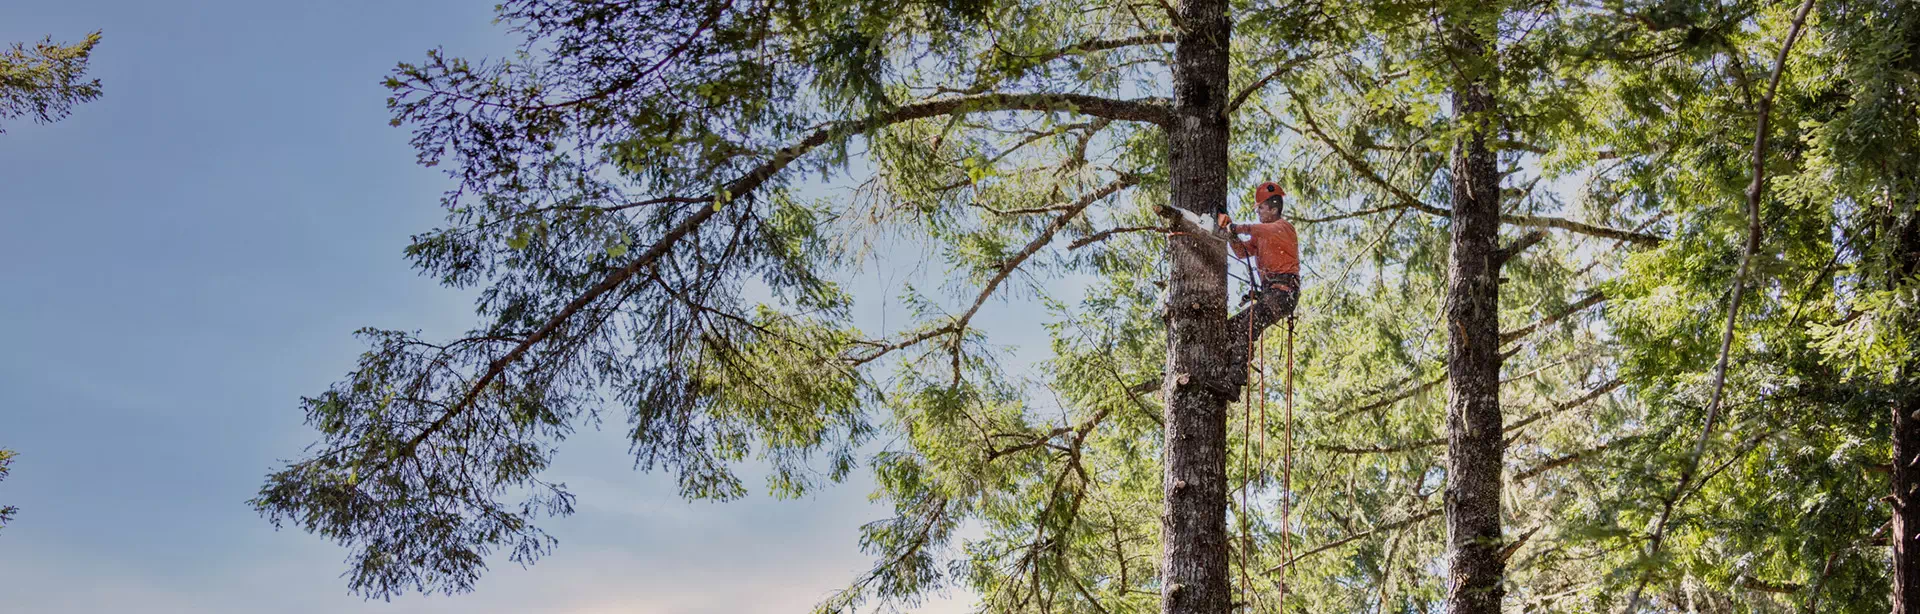 osoba wspinająca się na drzewo